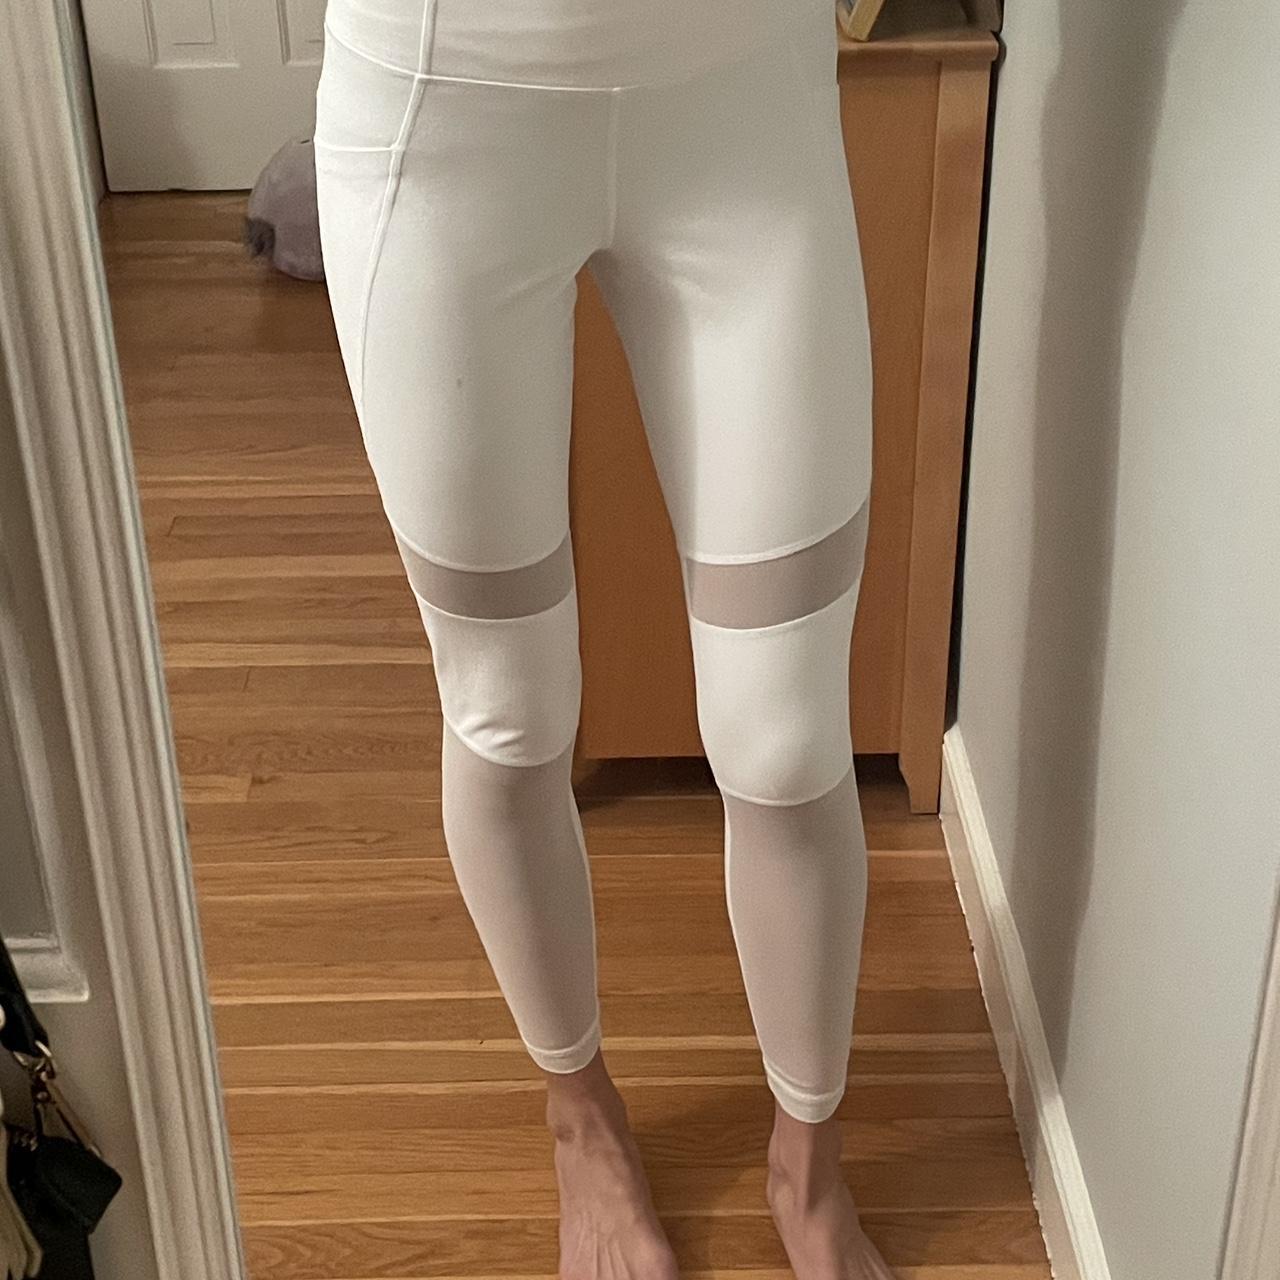 white leggings are niykee heaton NBK leggings only - Depop